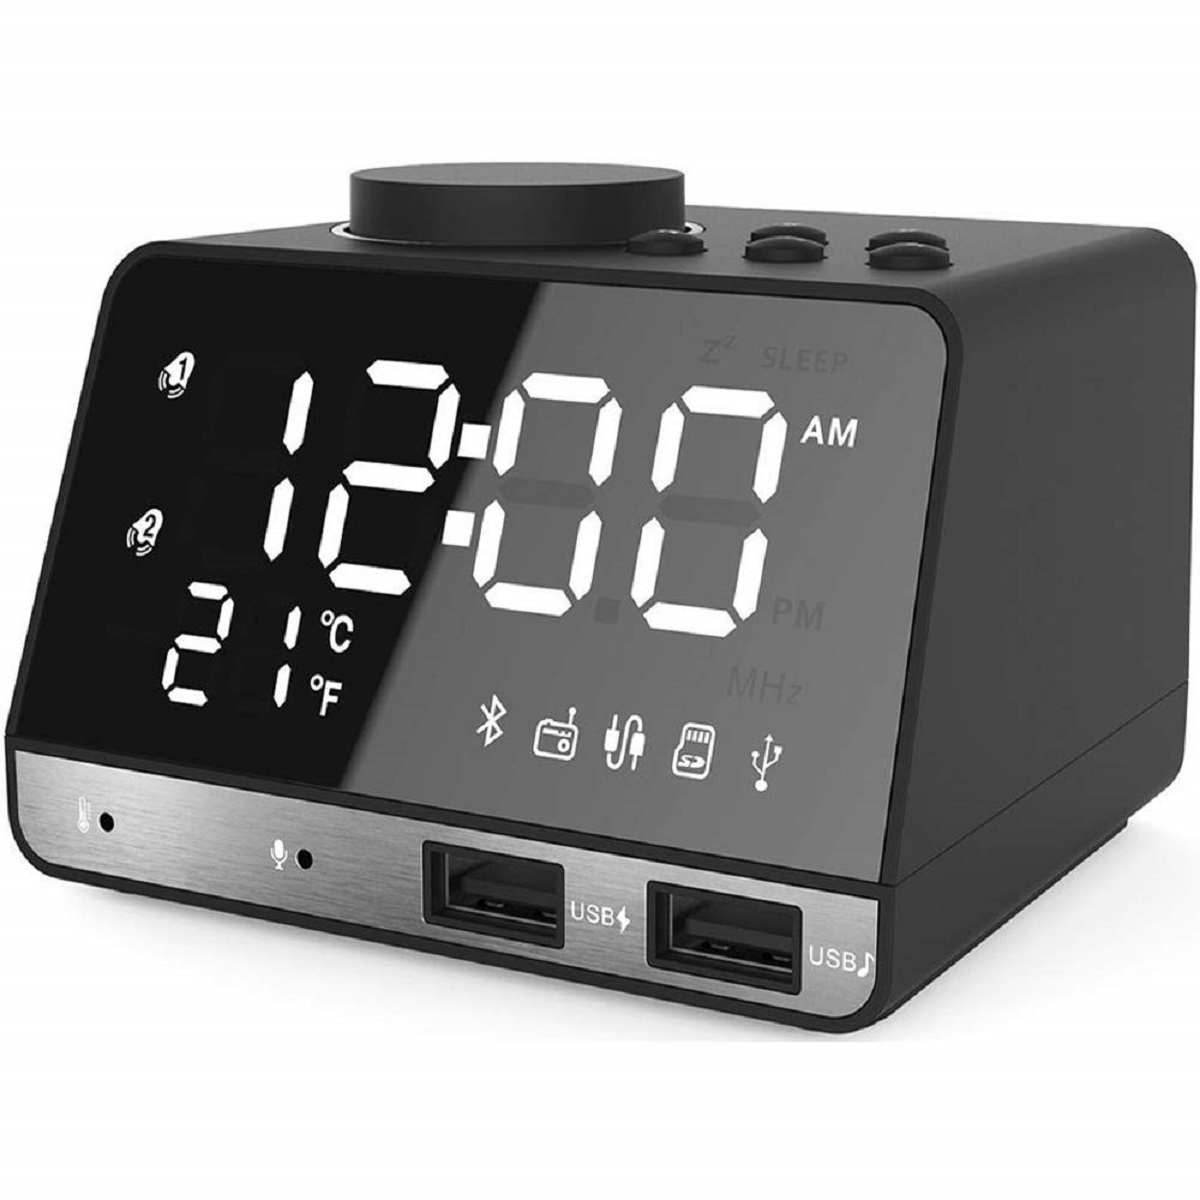 How To Set Hetyre Alarm Clock